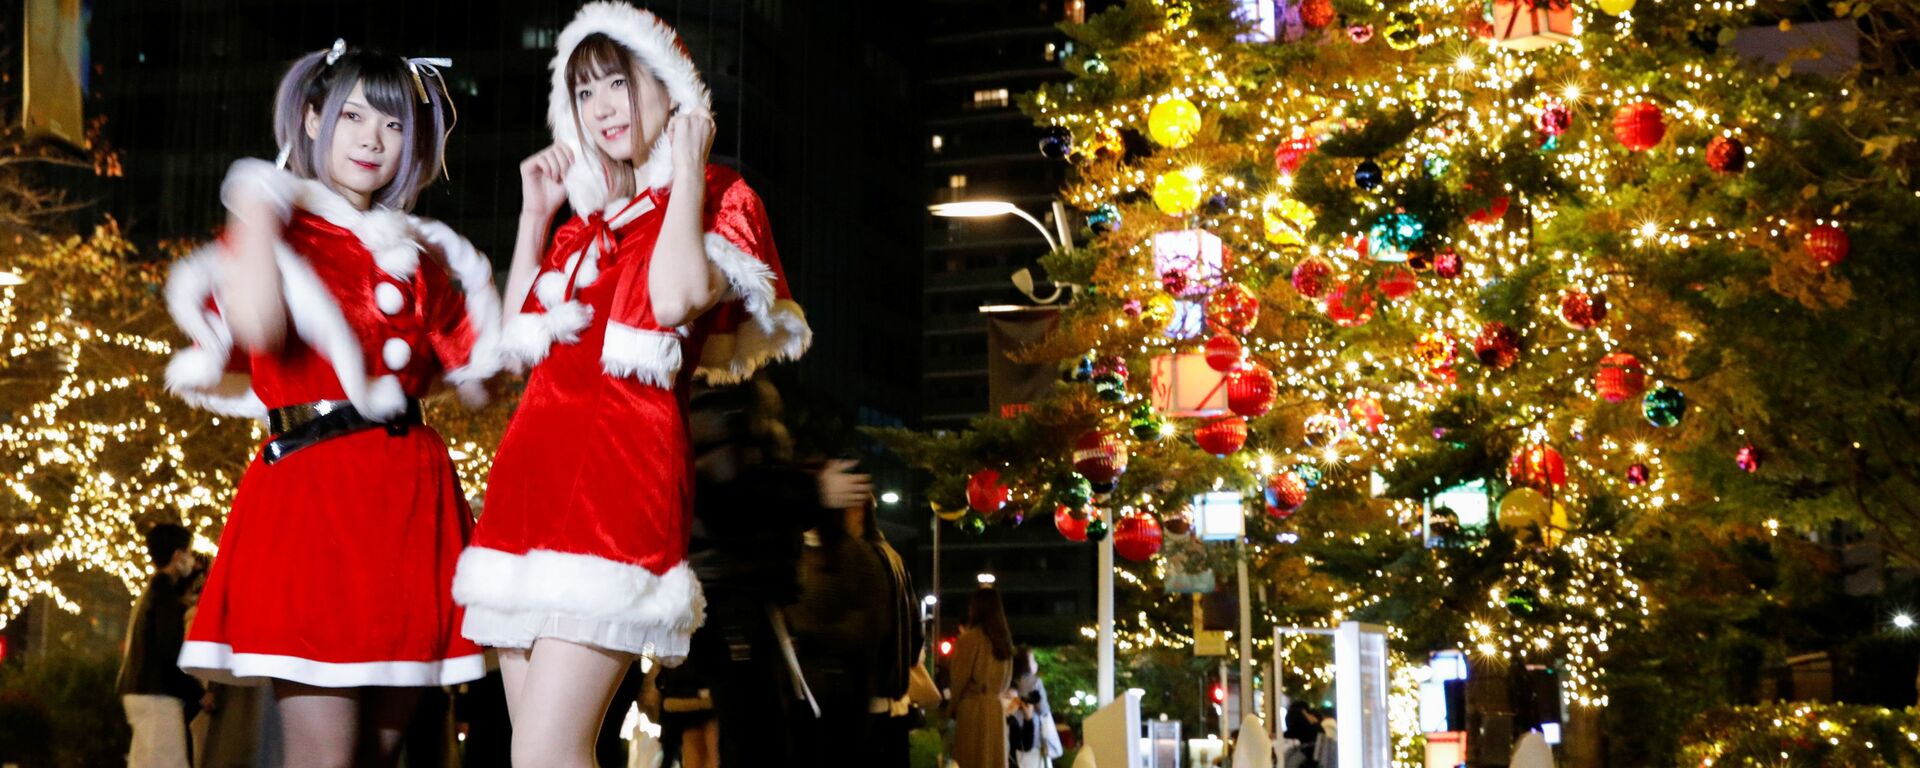 Девушки в костюмах Санта-Клауса фотографируются на фоне рождественских иллюминаций в Токио, Япония - Sputnik Latvija, 1920, 28.11.2021